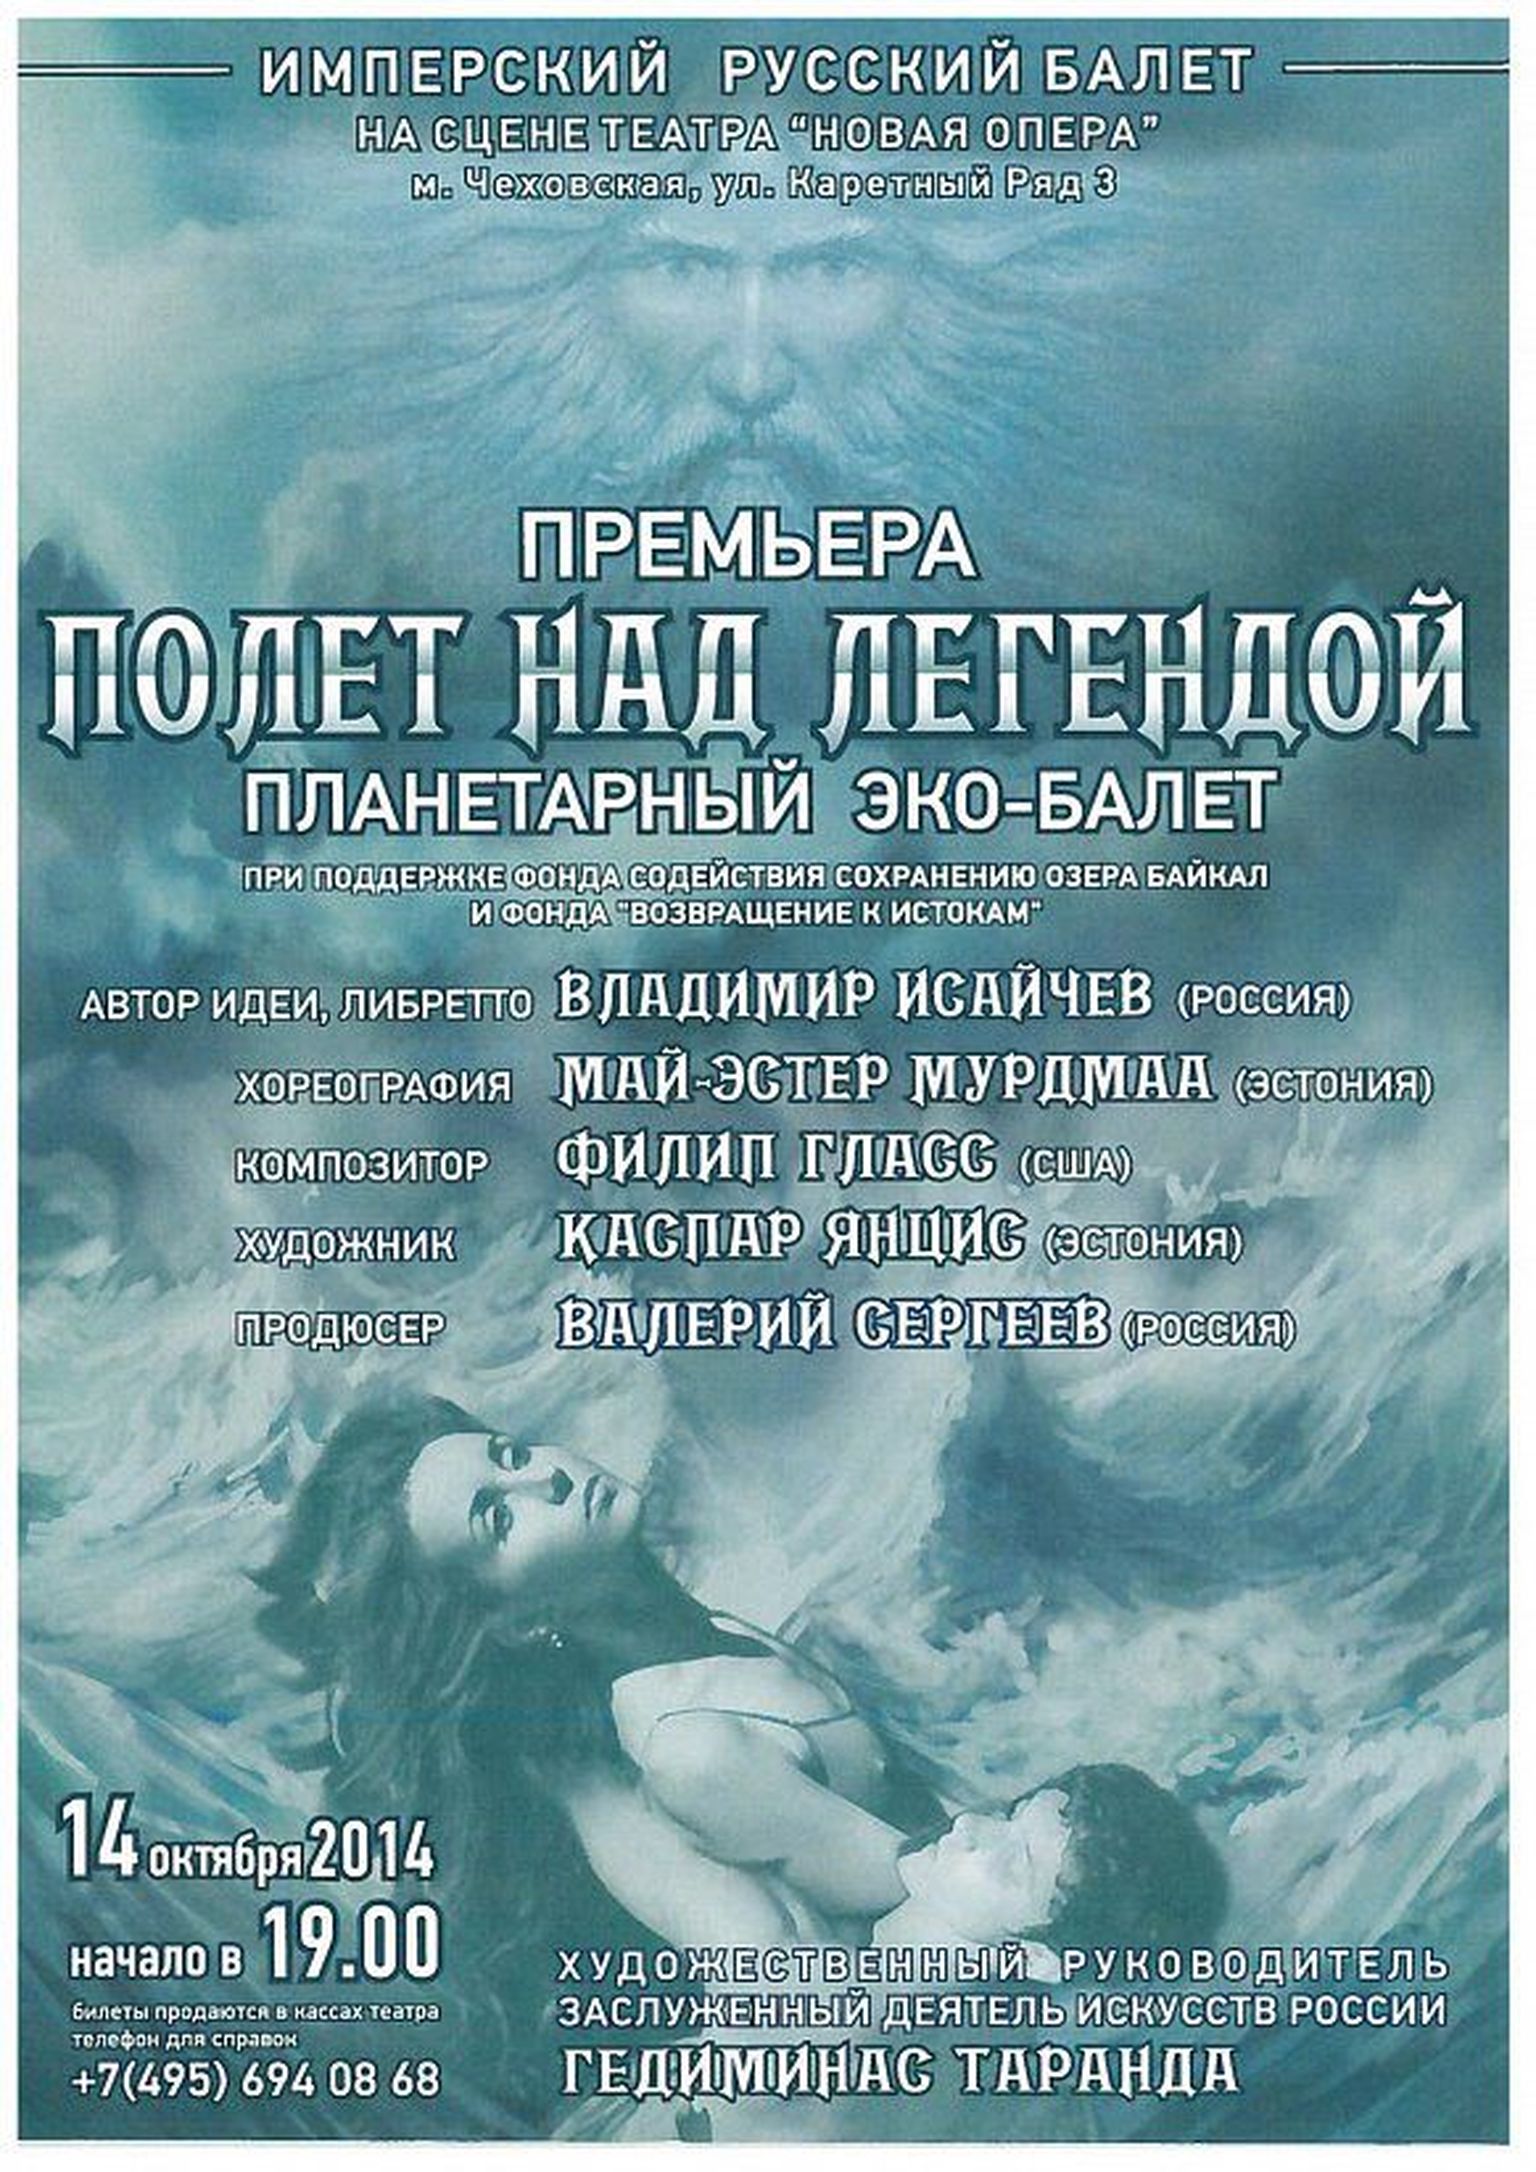 Baikali järvele pühendatud ballett «Lend legendi kohal».